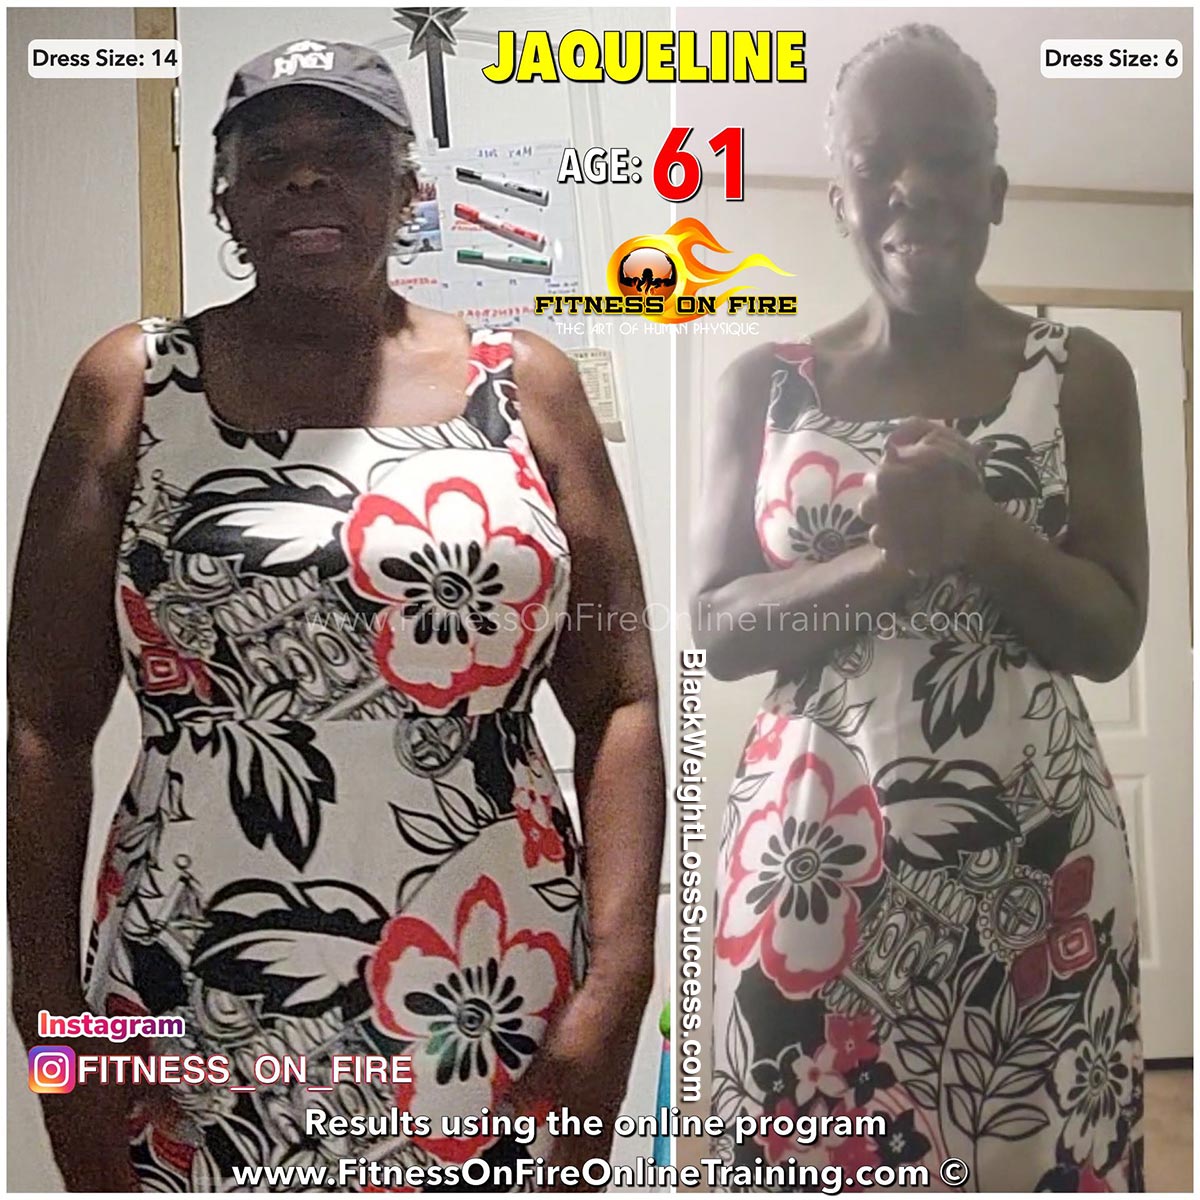 jaqueline lost 26 pounds